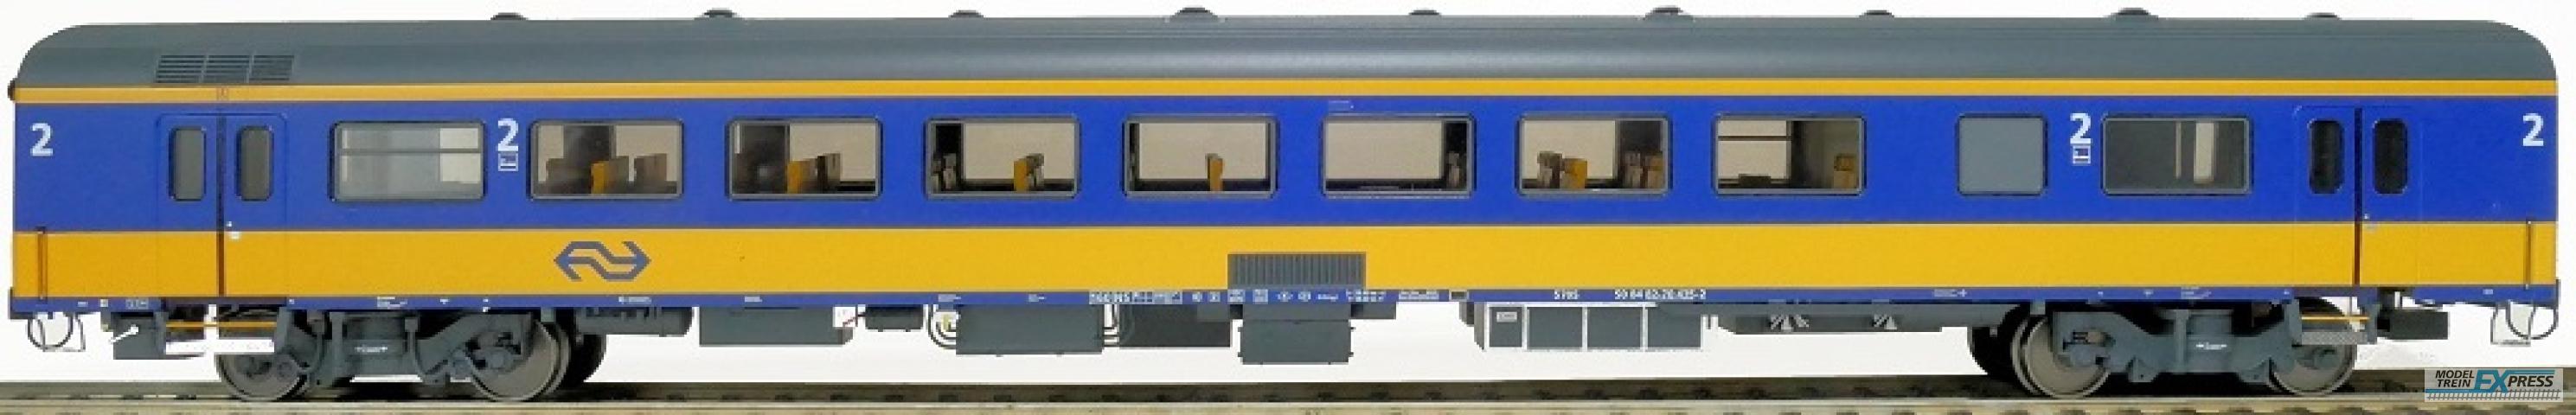 Exact-train 11102 NS ICRm Garnitur 4 Reisezugwagen Bd( Neue farbe Gelb / Blau), Ep. V